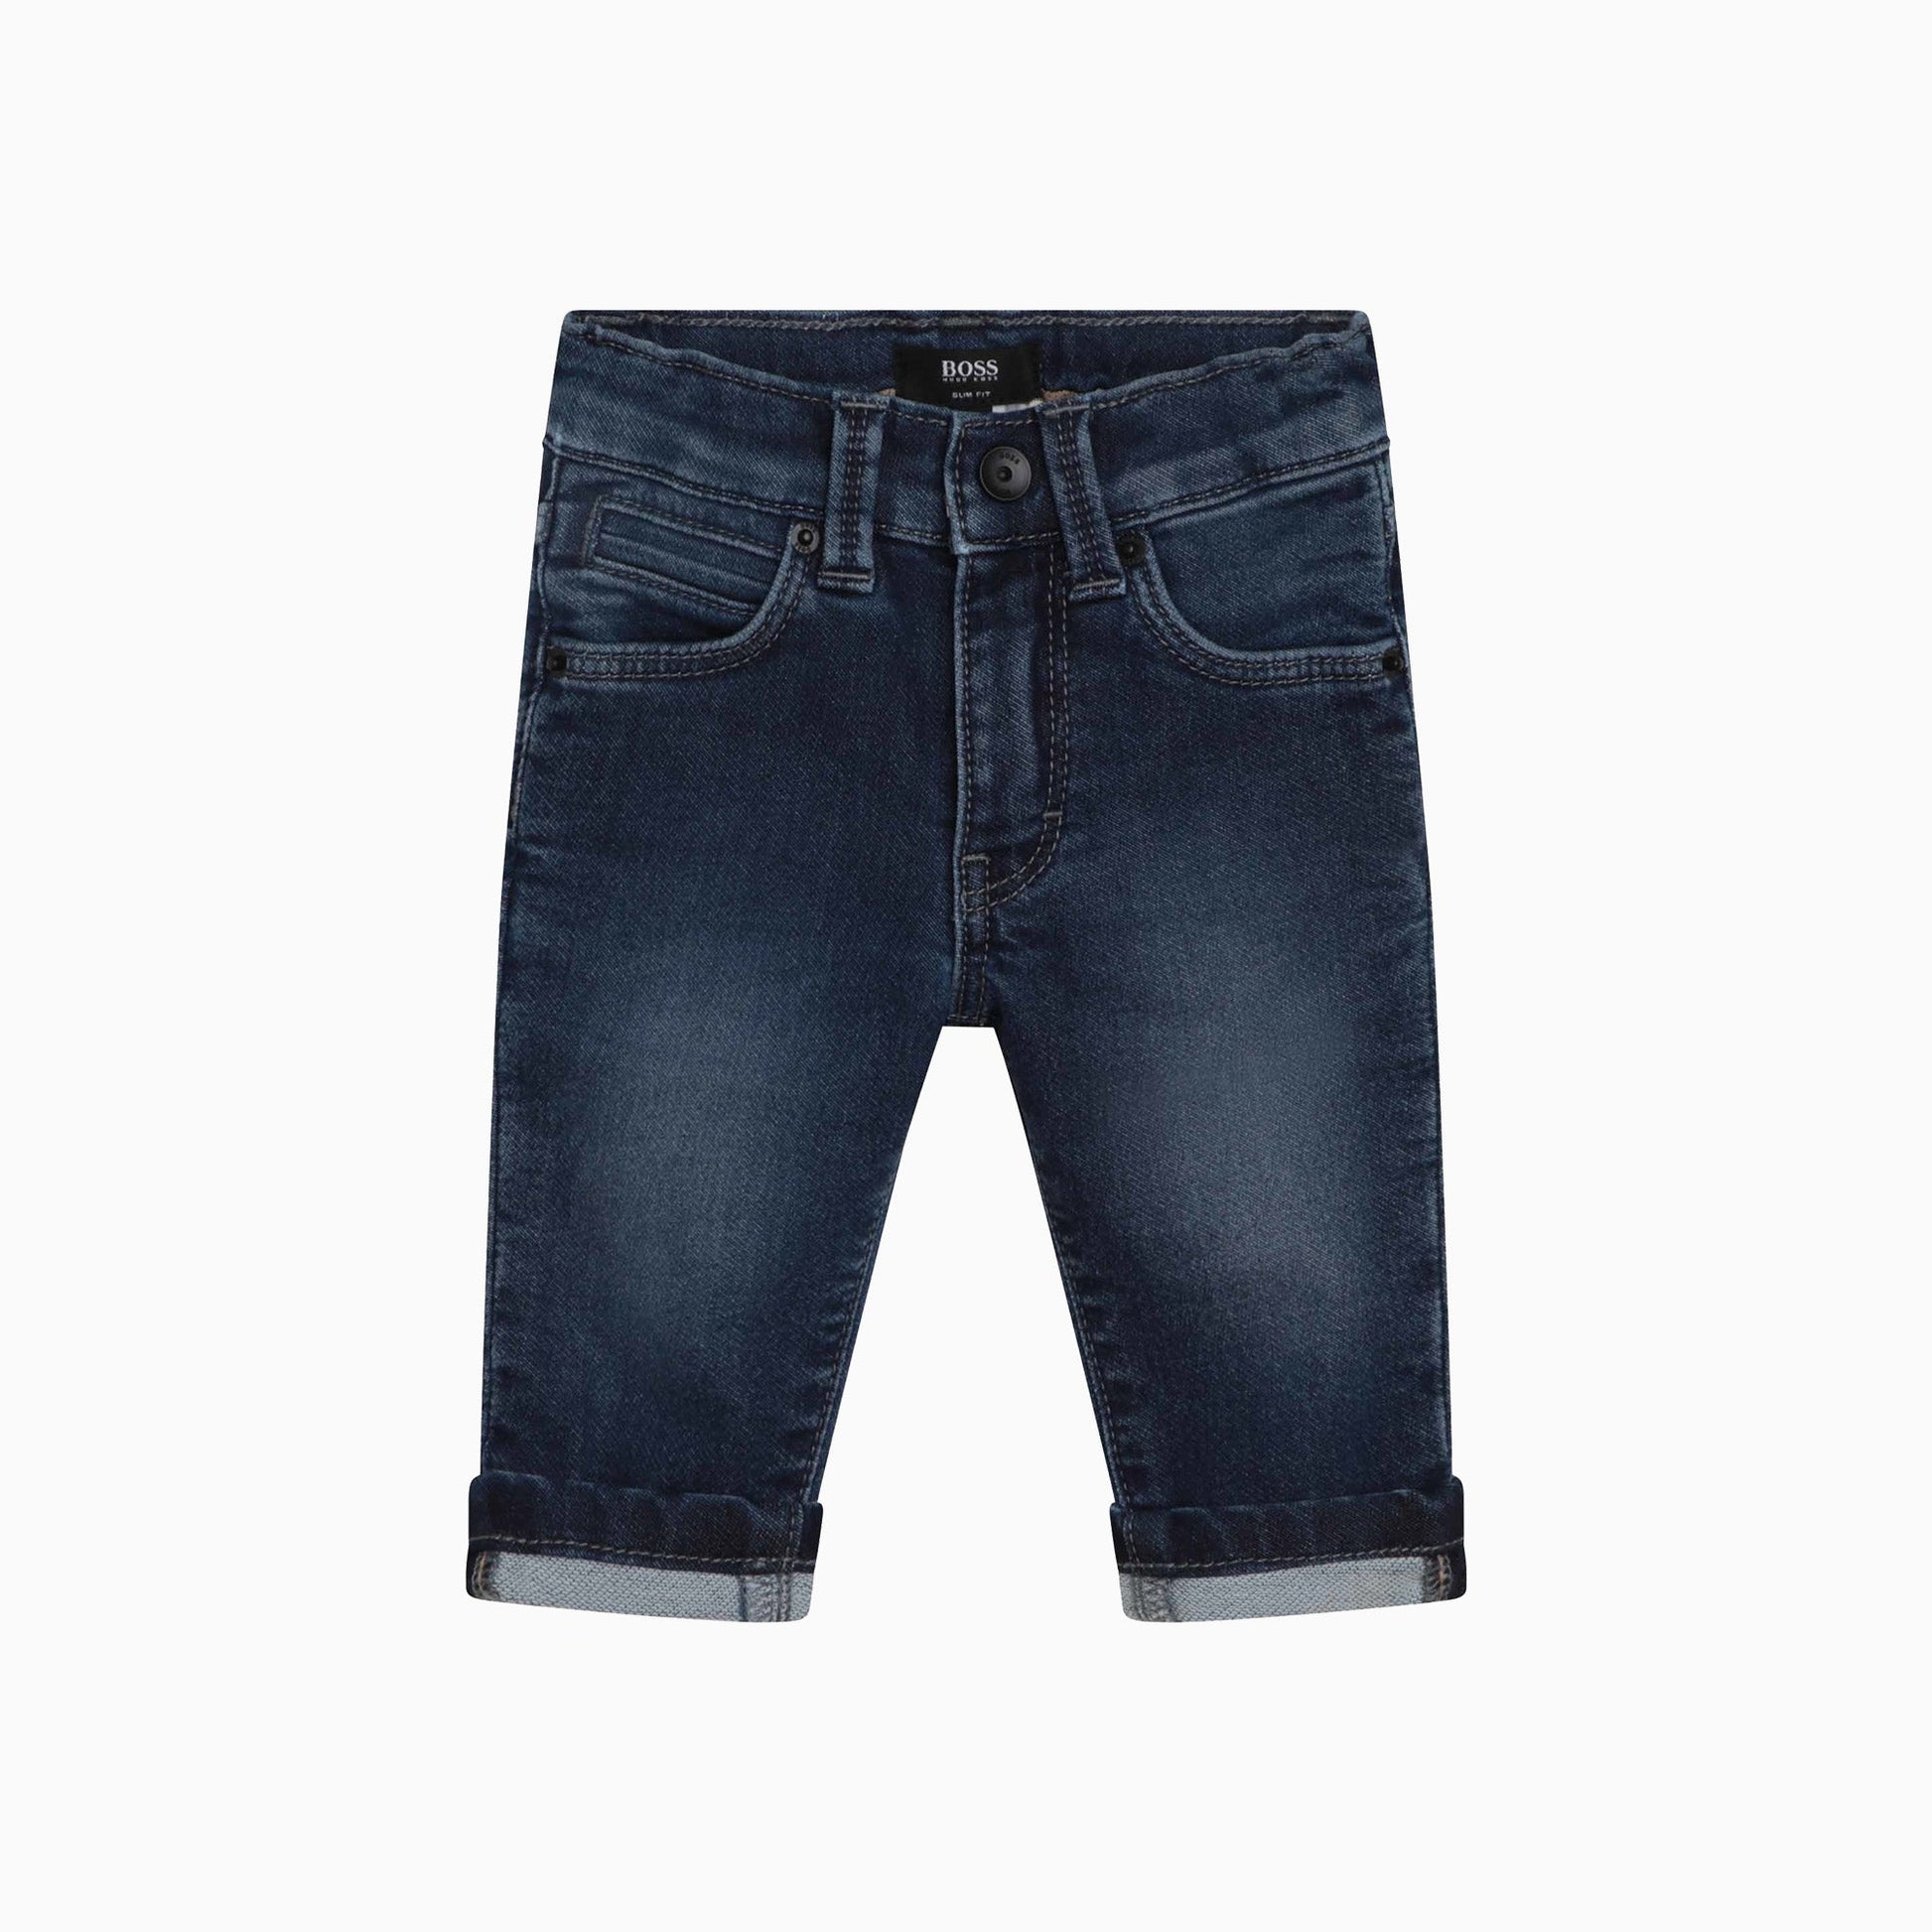 hugo-boss-kids-pantalon-denim-jeans-shorts-j04451-z35